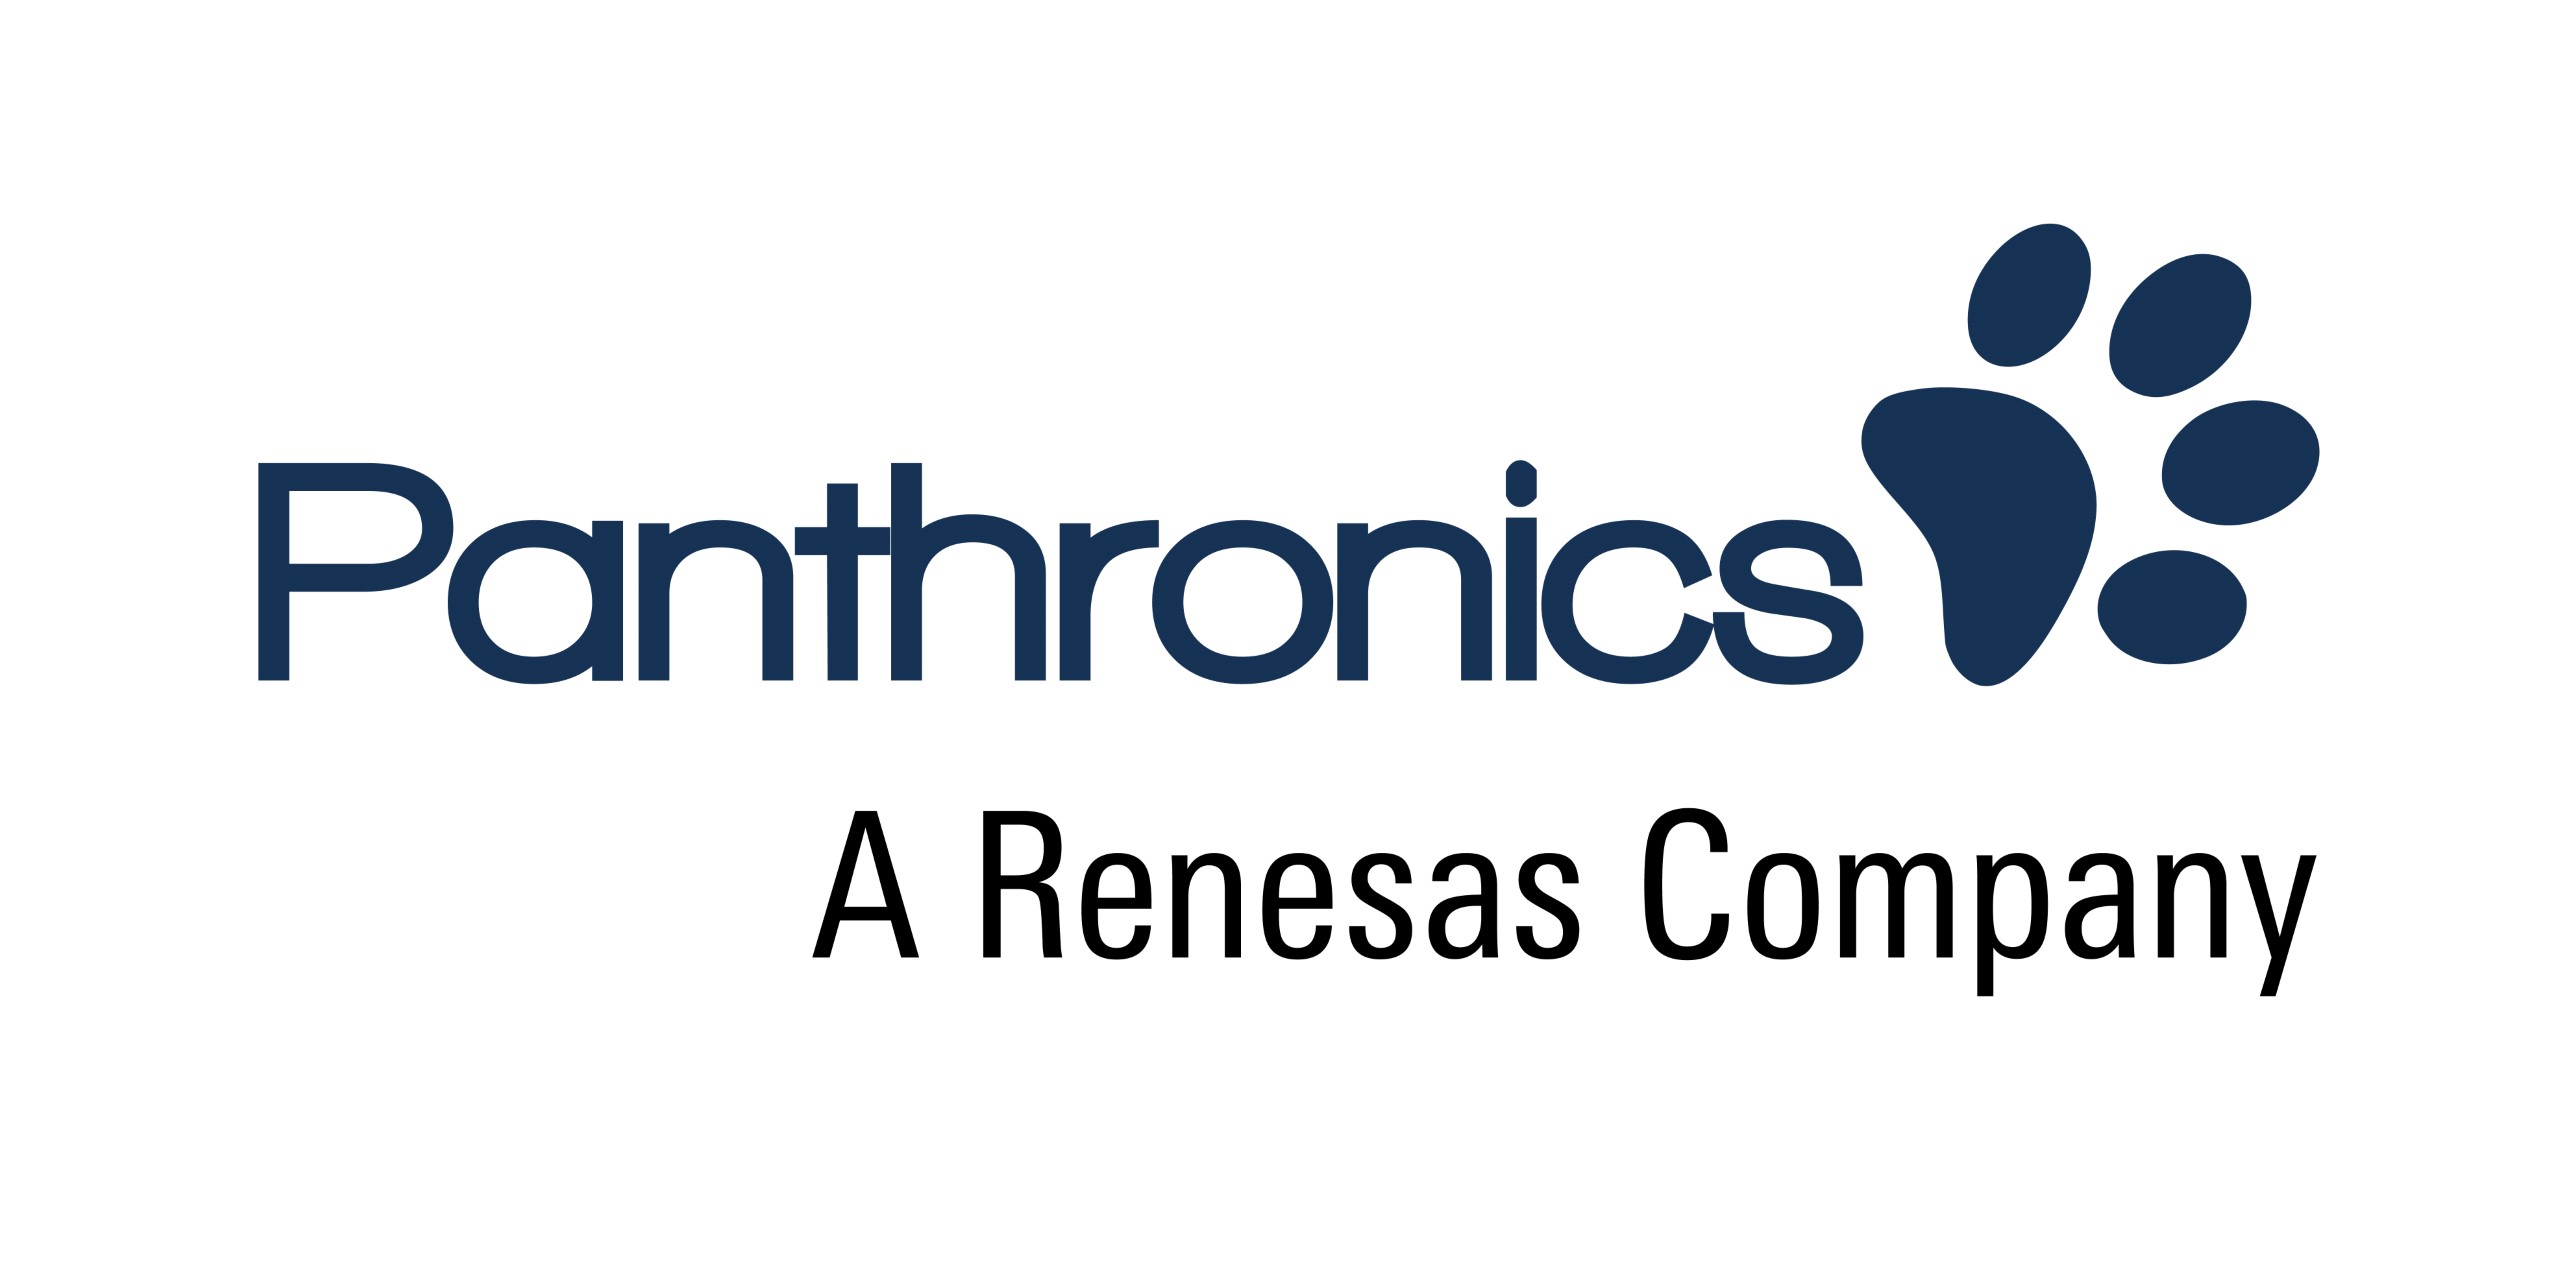 Panthronics AG